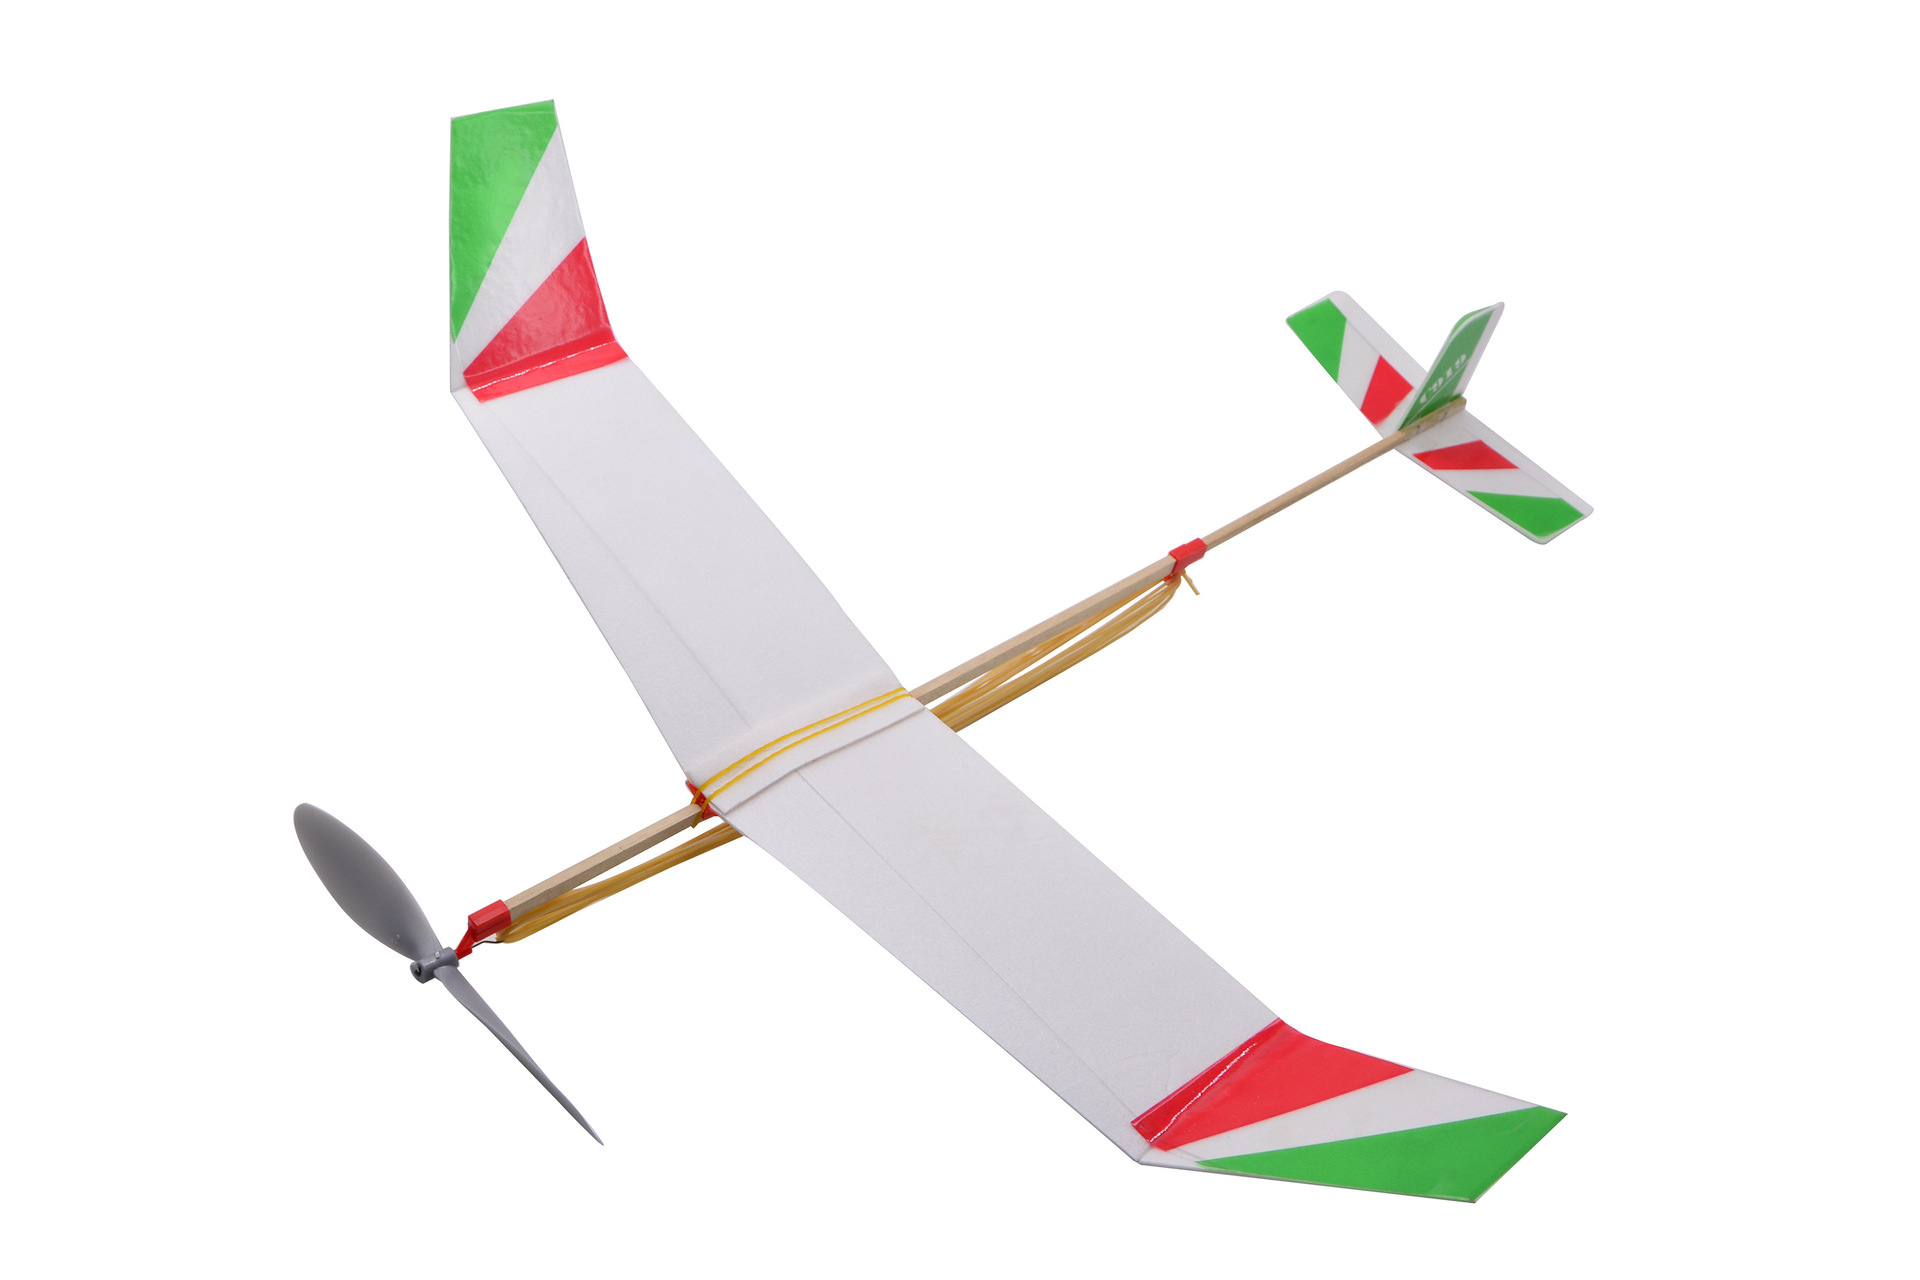 橡筋动力模型飞机安装图片